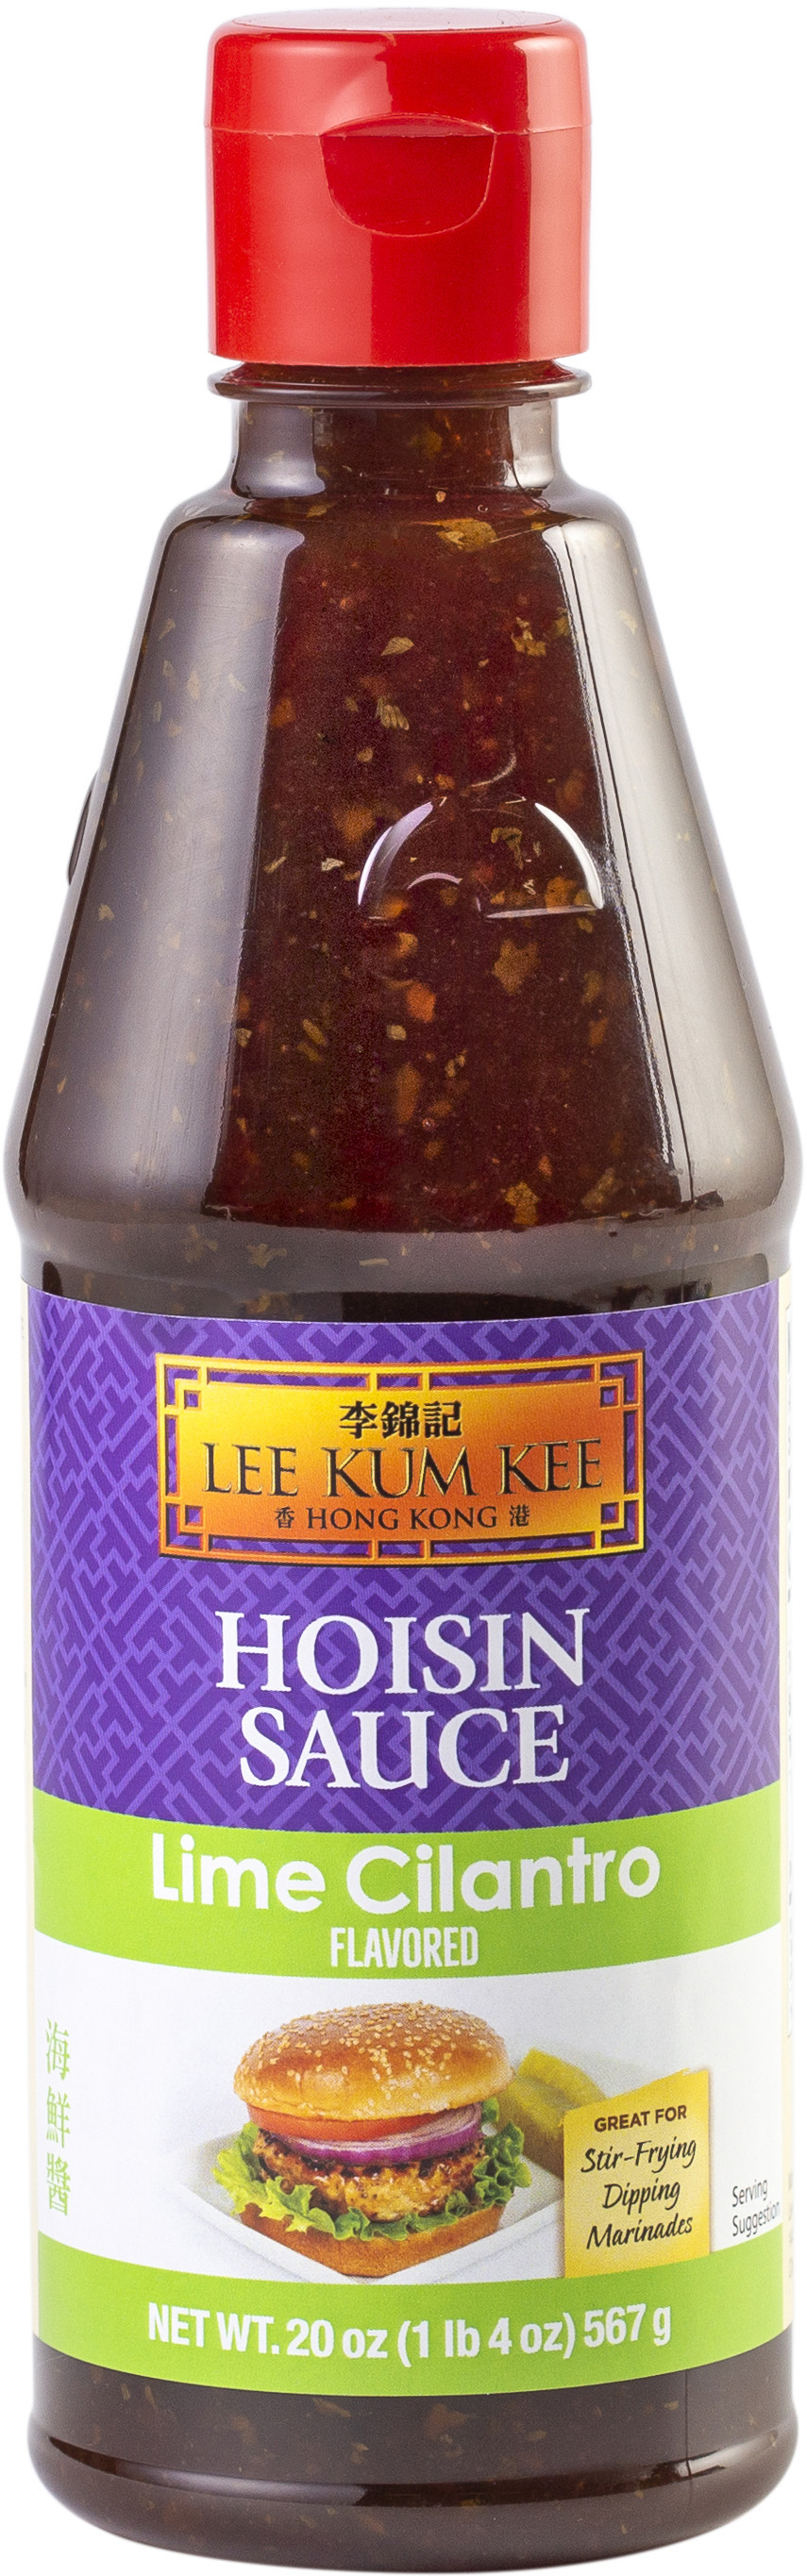 Lime Cilantro Flavored Hoisin Sauce, Hoisin, Lee Kum Kee Home